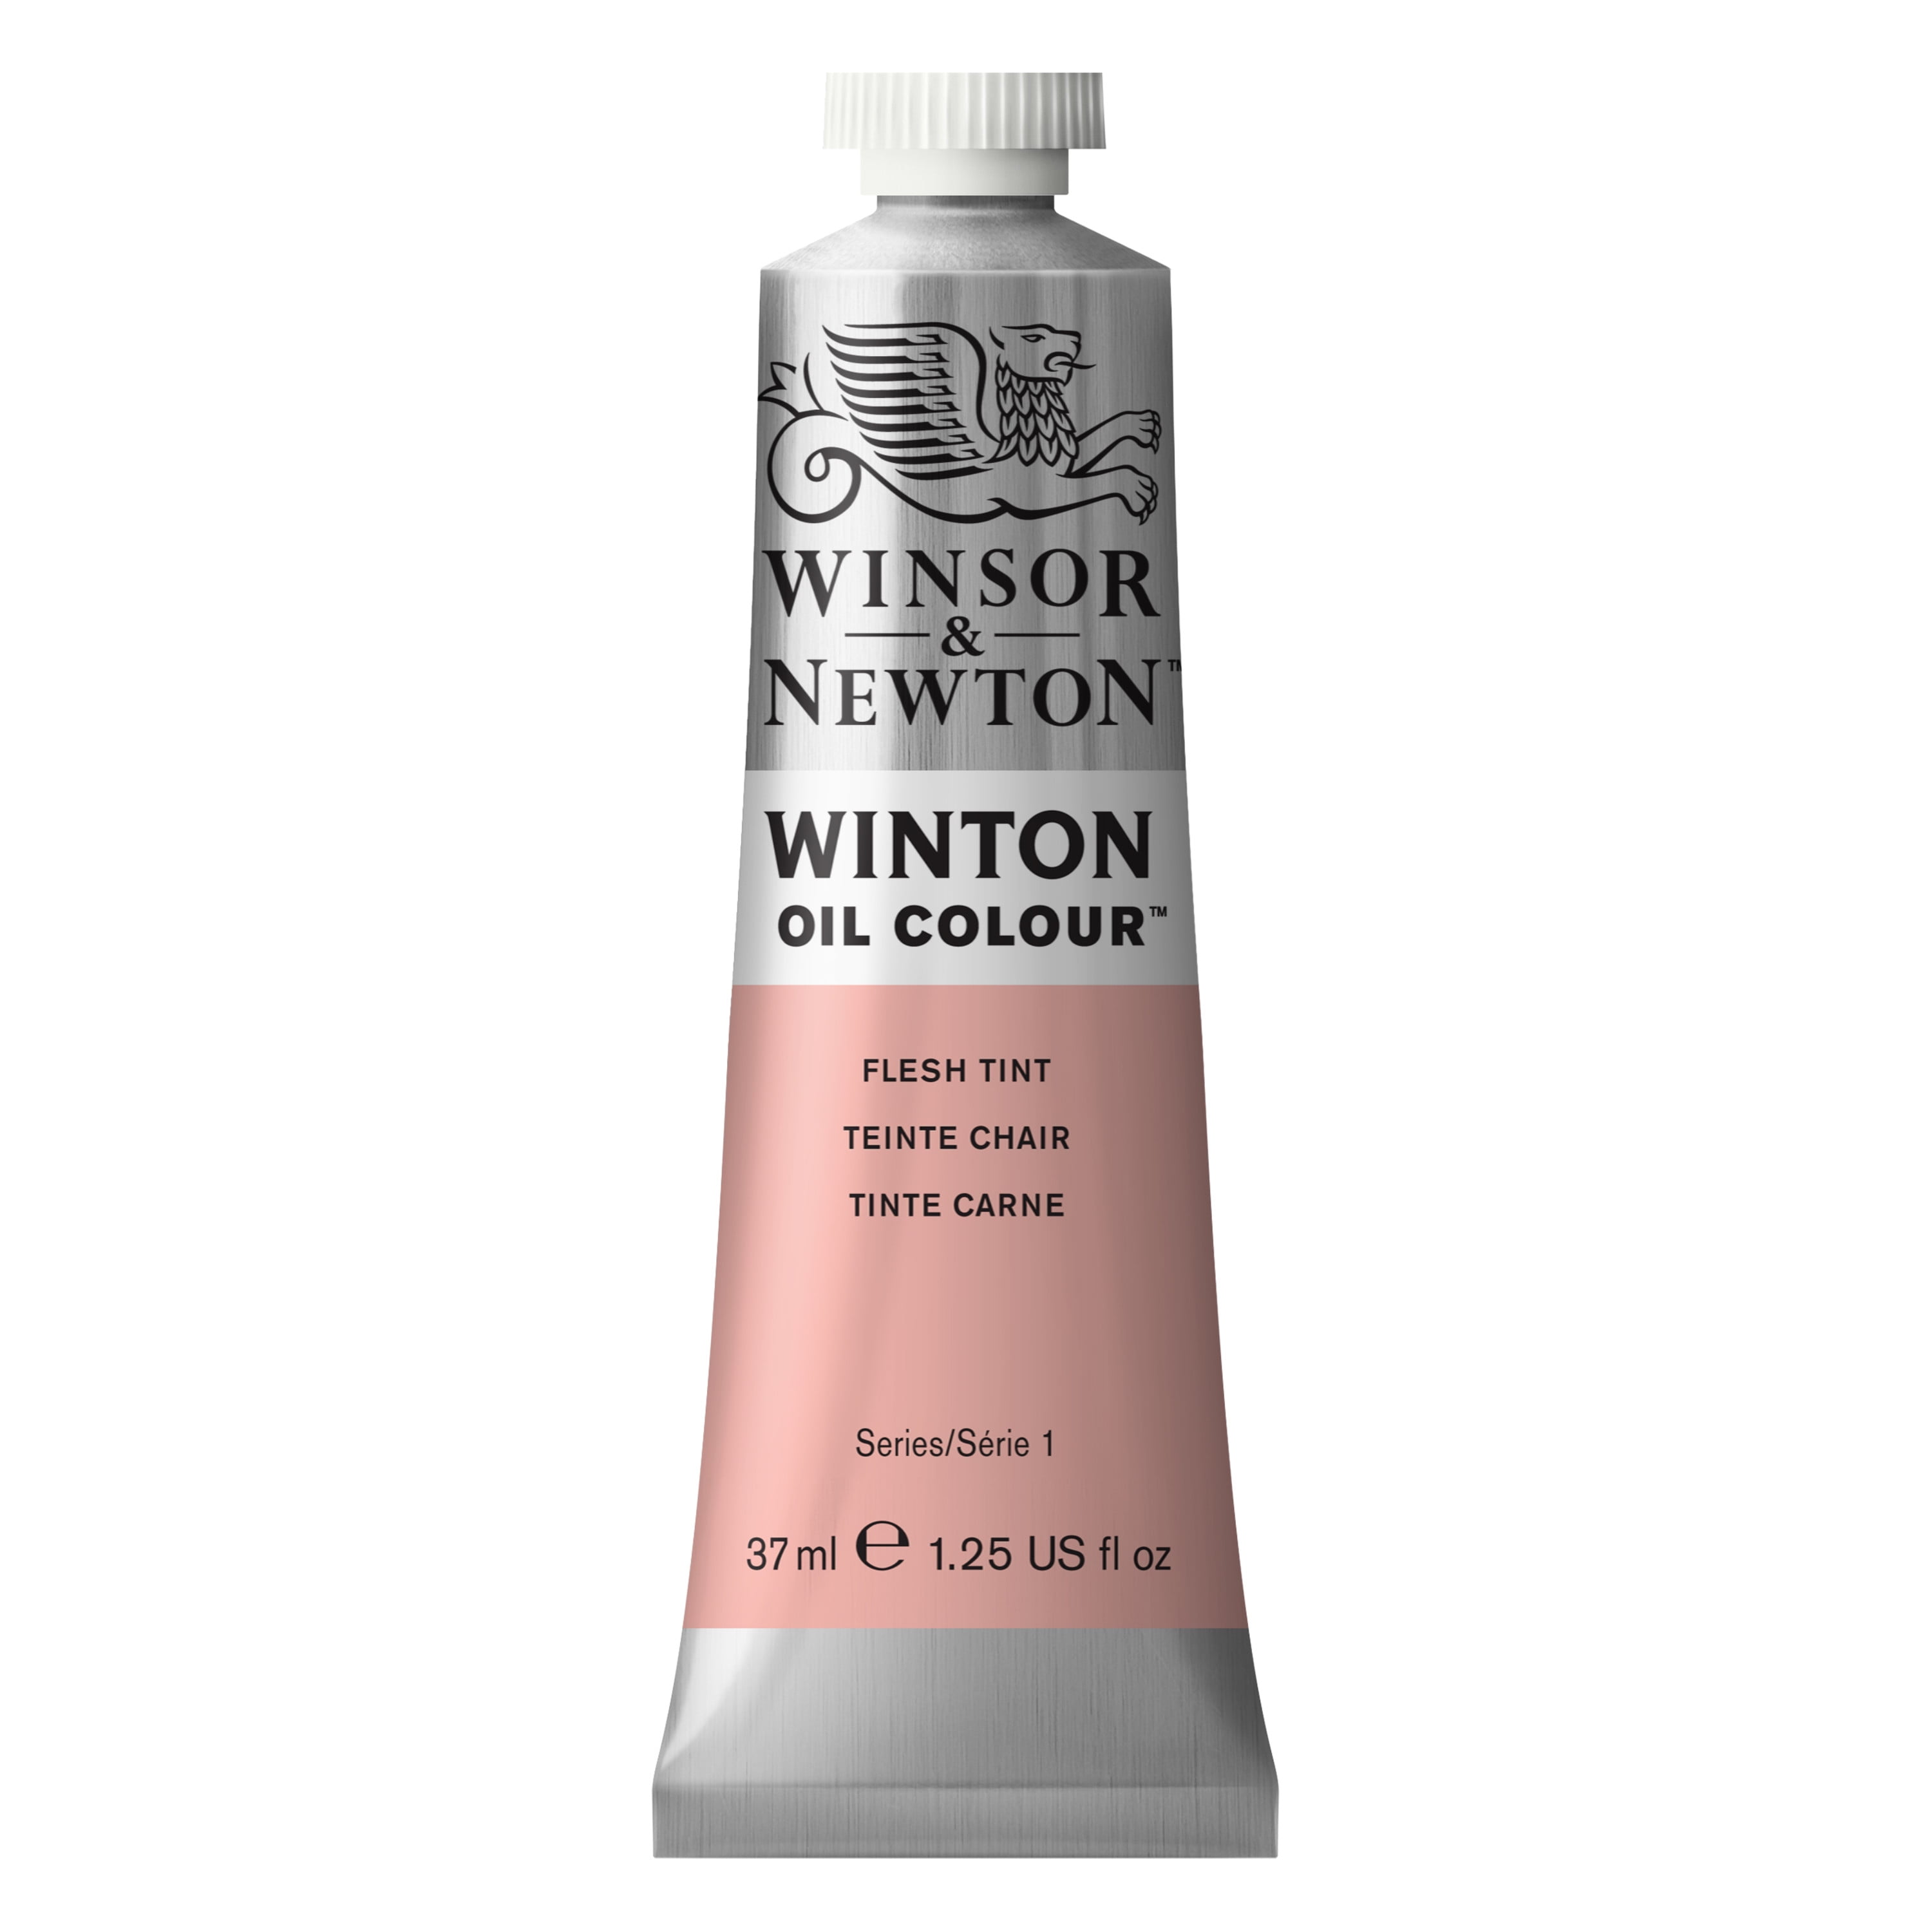 Winsor & Newton Liquid Indian Ink, Non-Waterproof, 1 oz.